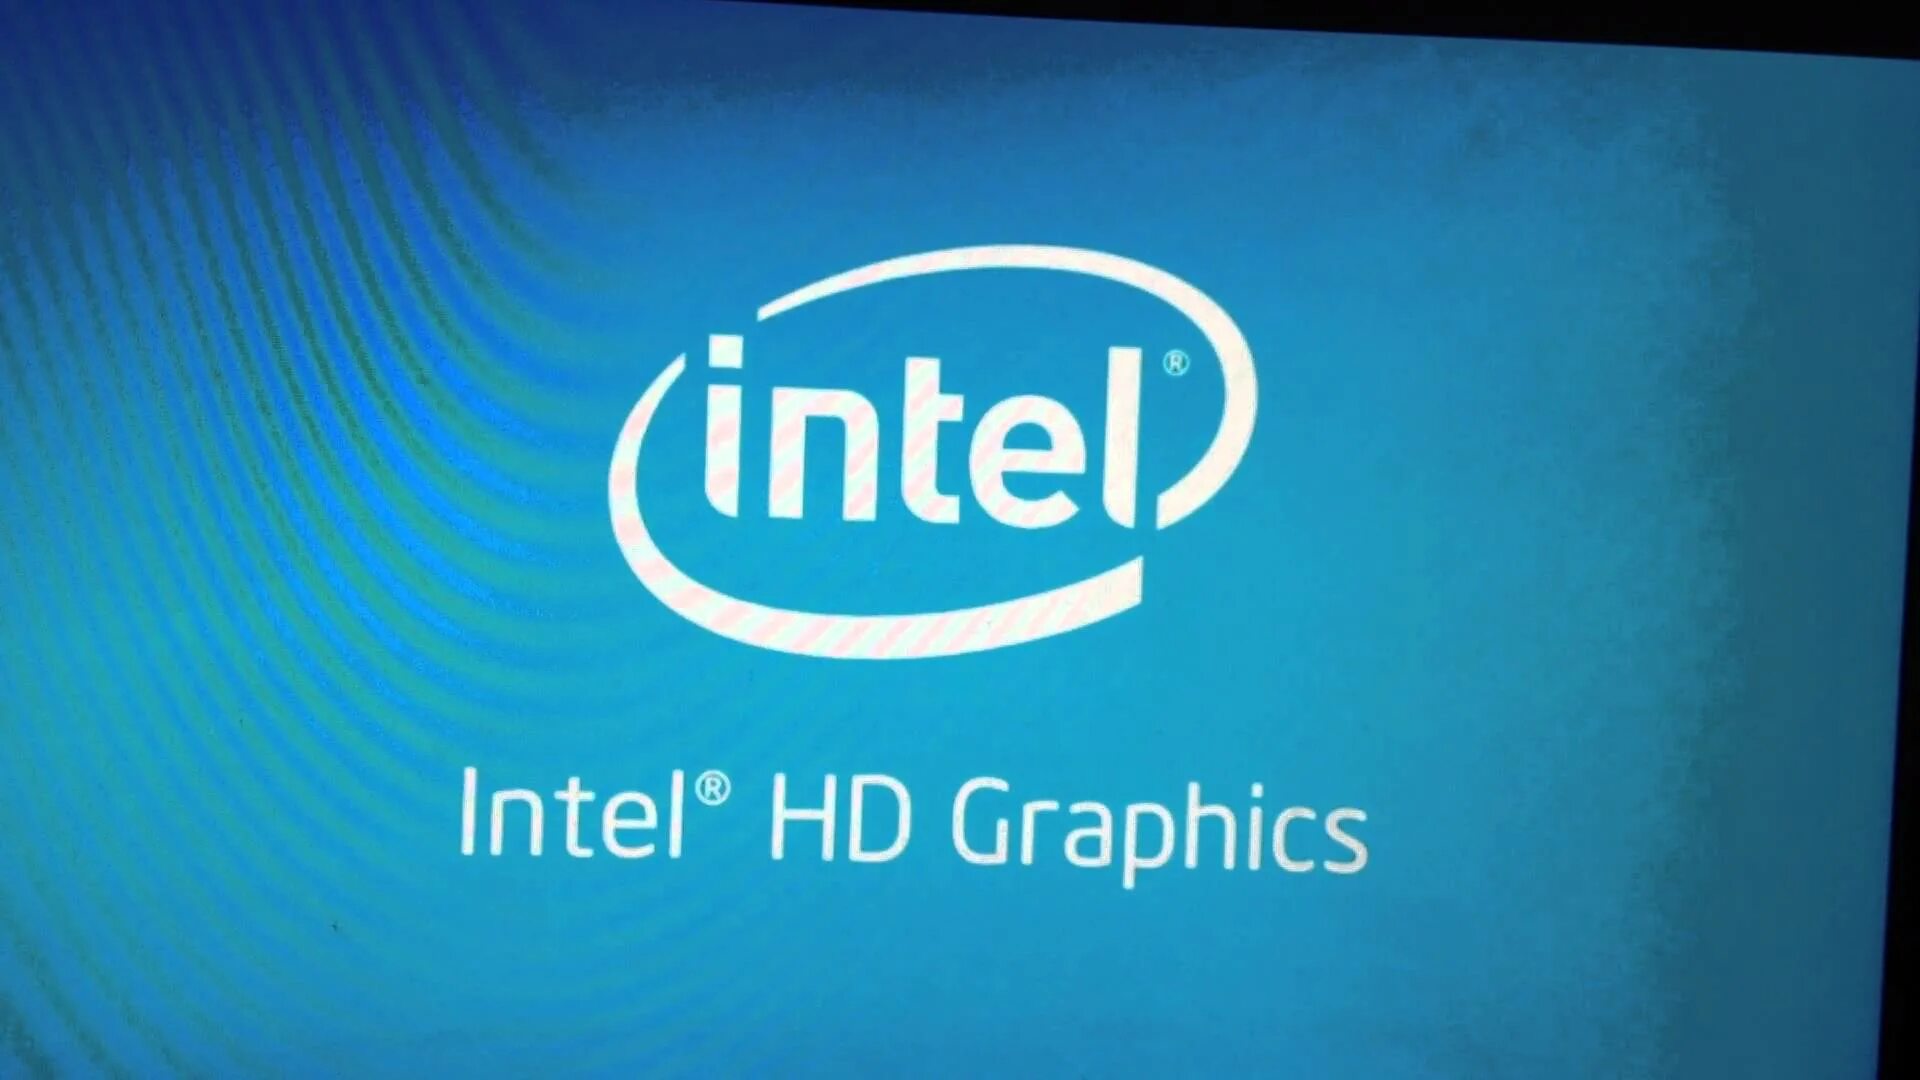 Intel. Интел HD. Intel HD Graphics. Логотип Интел хд Графикс. Intel fails